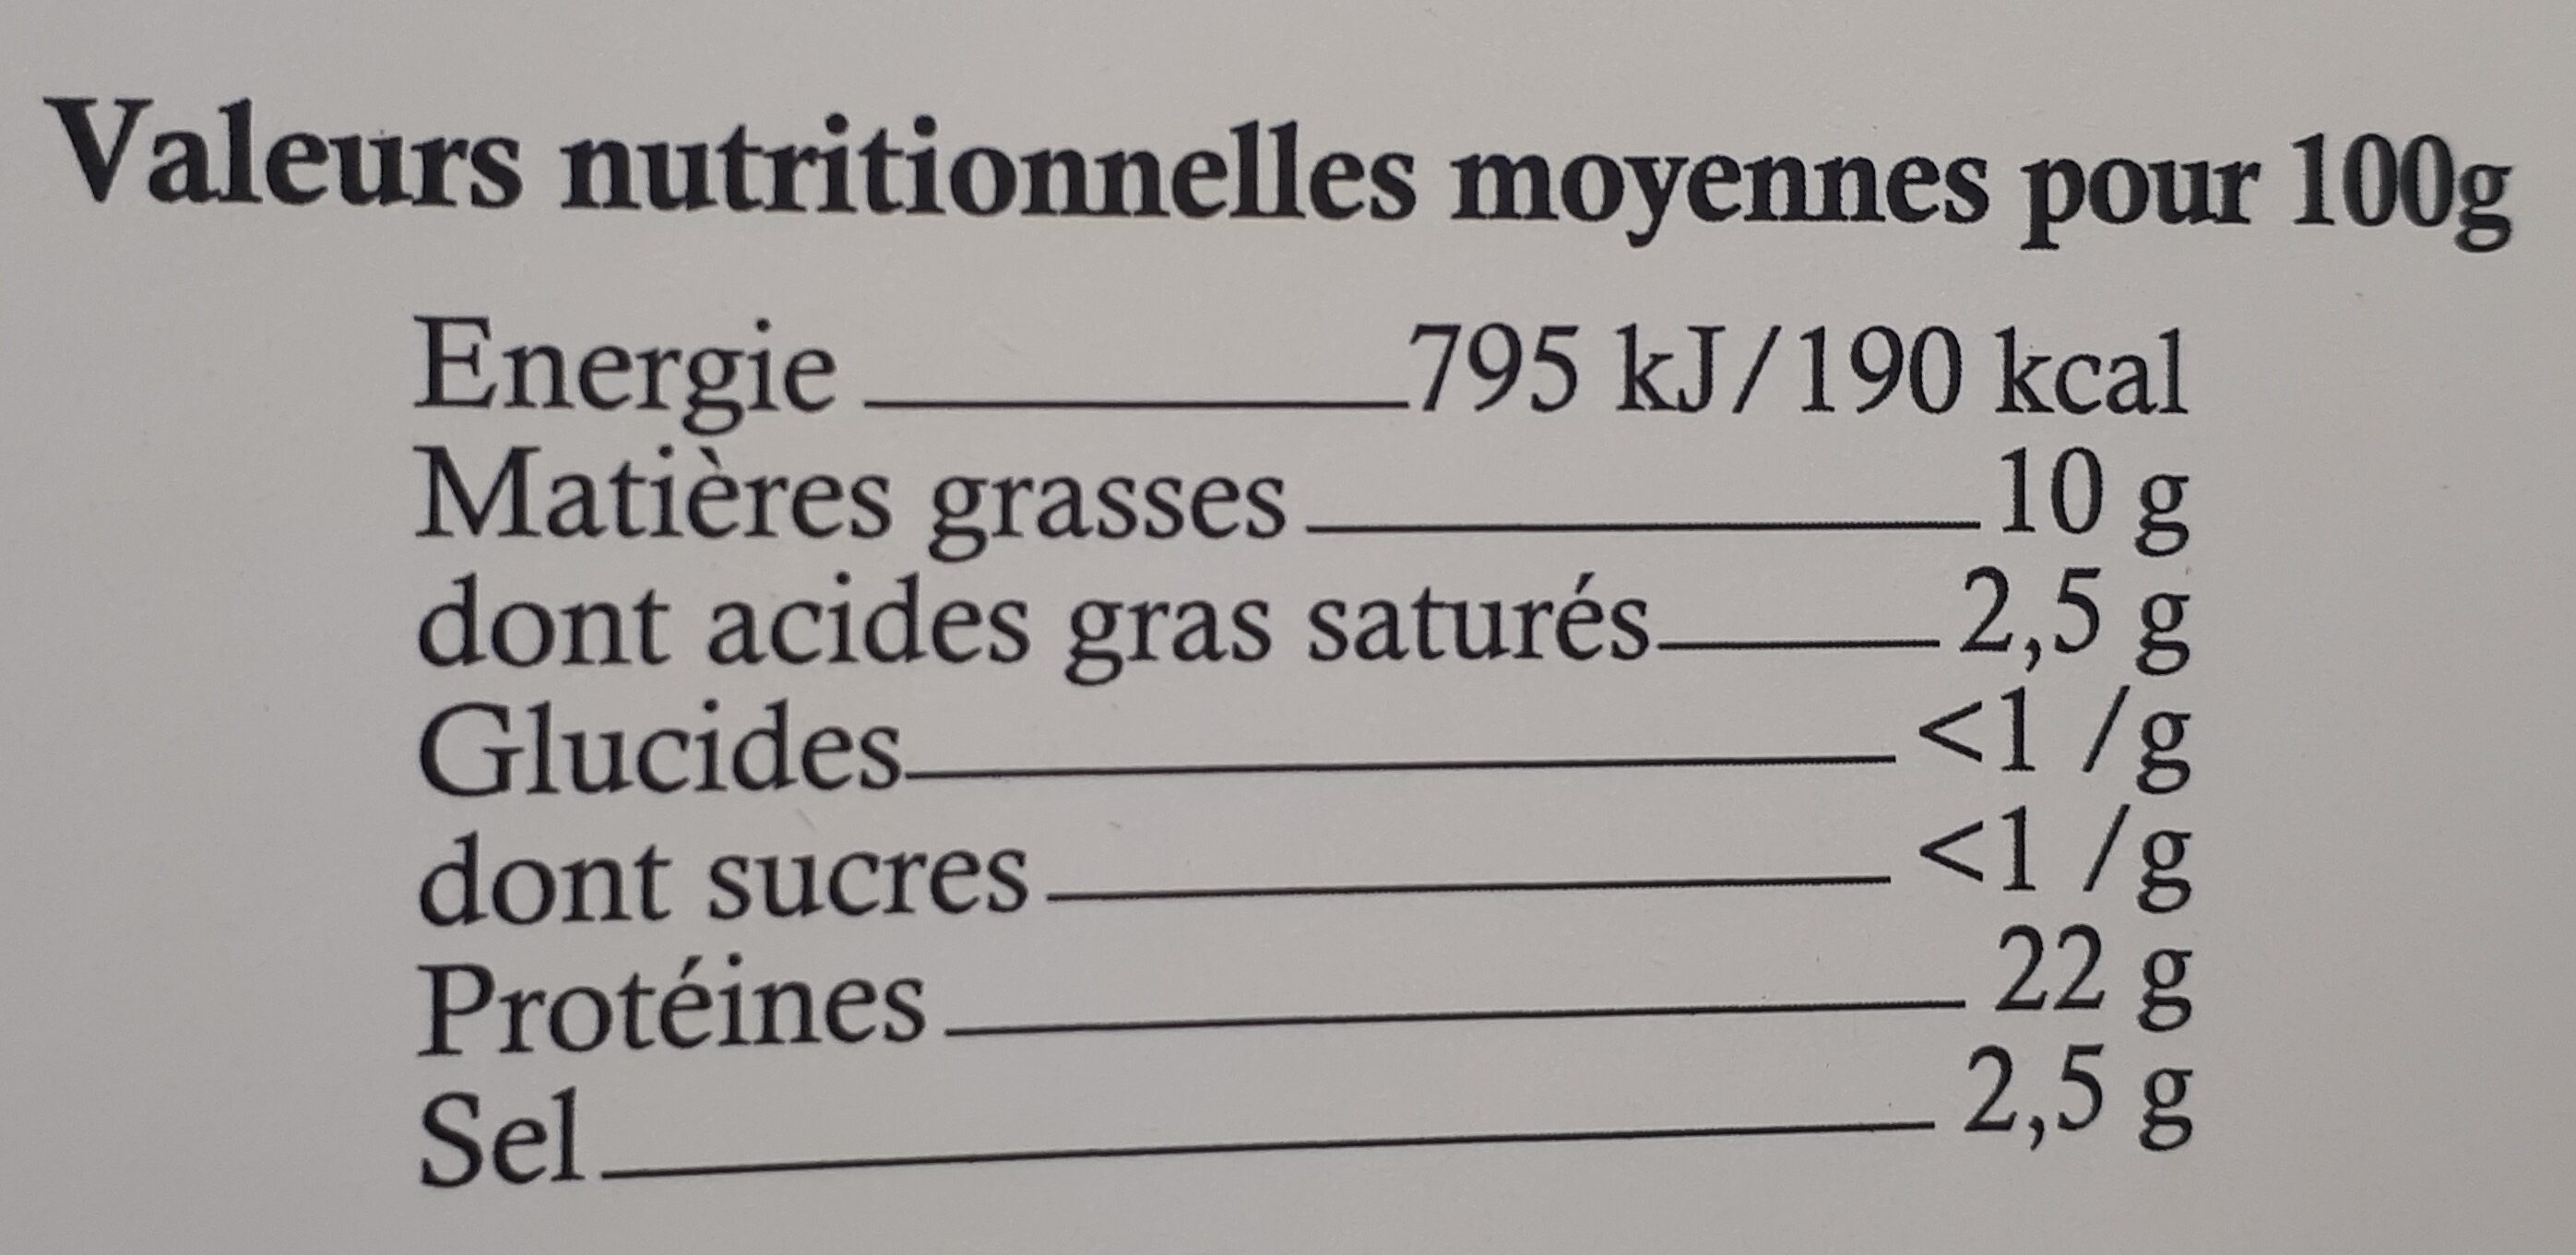 Filet de saumon fumé de l'Atlantique - Nutrition facts - fr